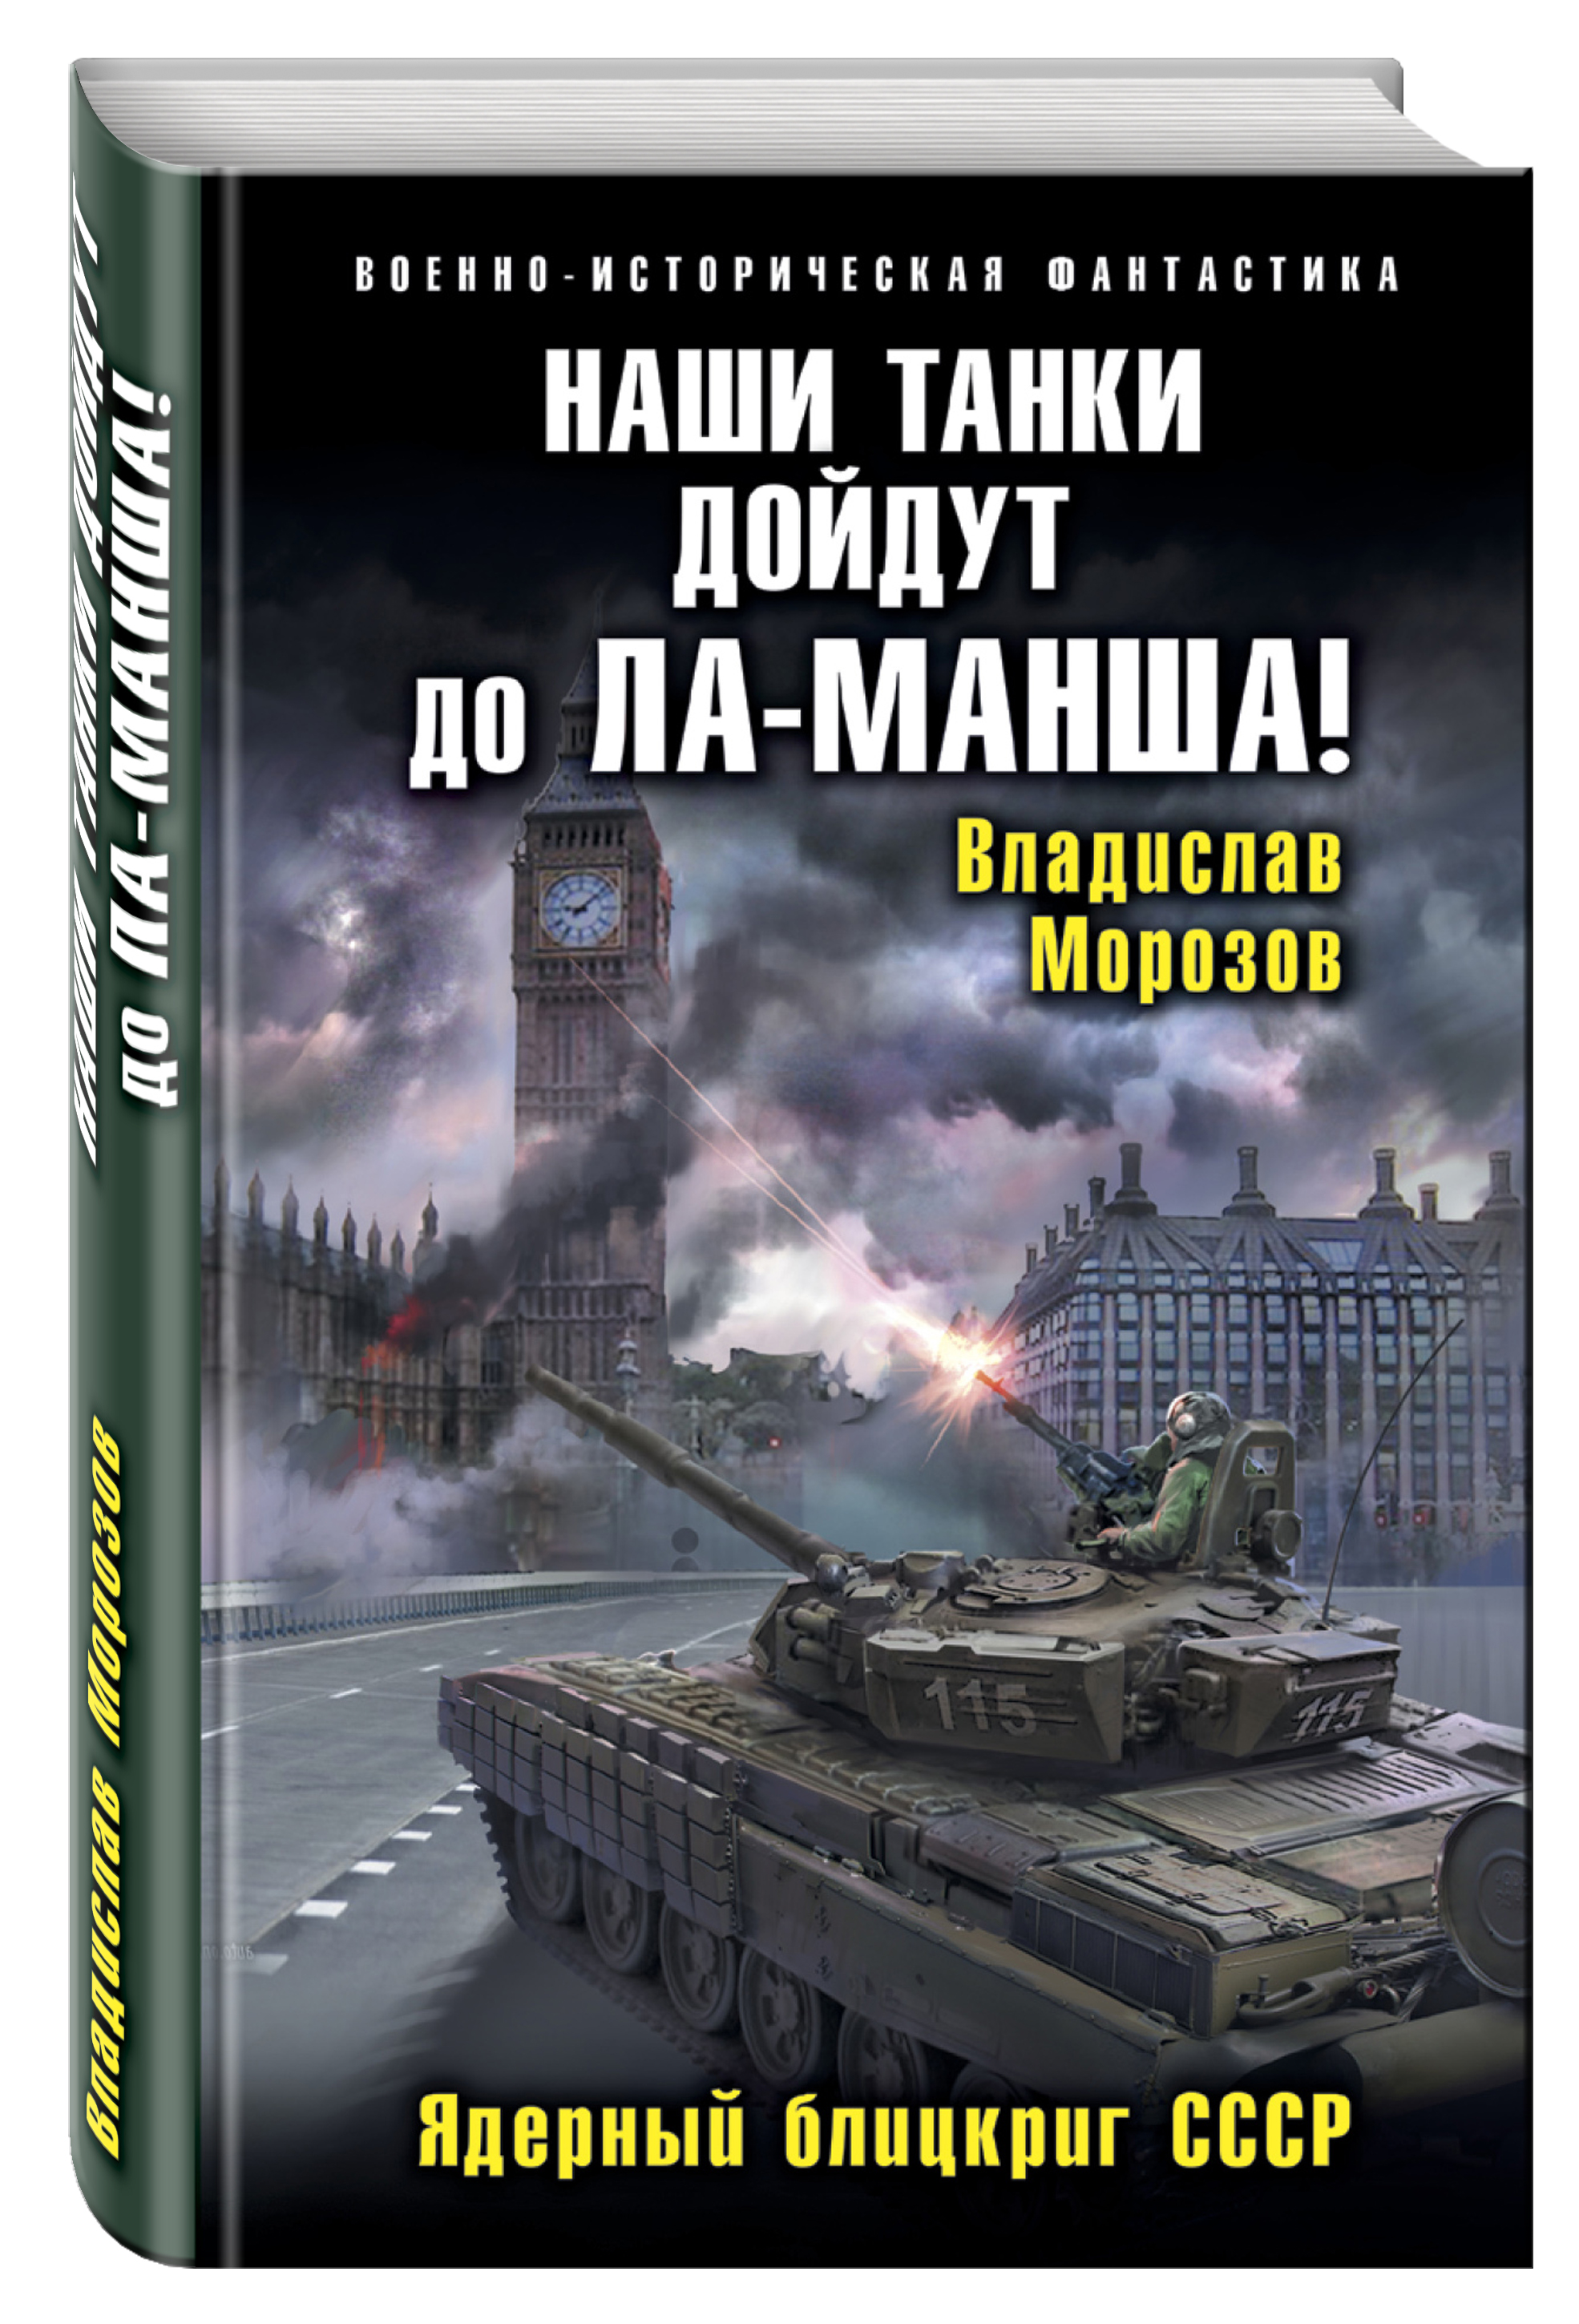 Книг новый военные. Наши танки дойдут до ла Манша! Ядерный блицкриг СССР. Альтернативная история книги.